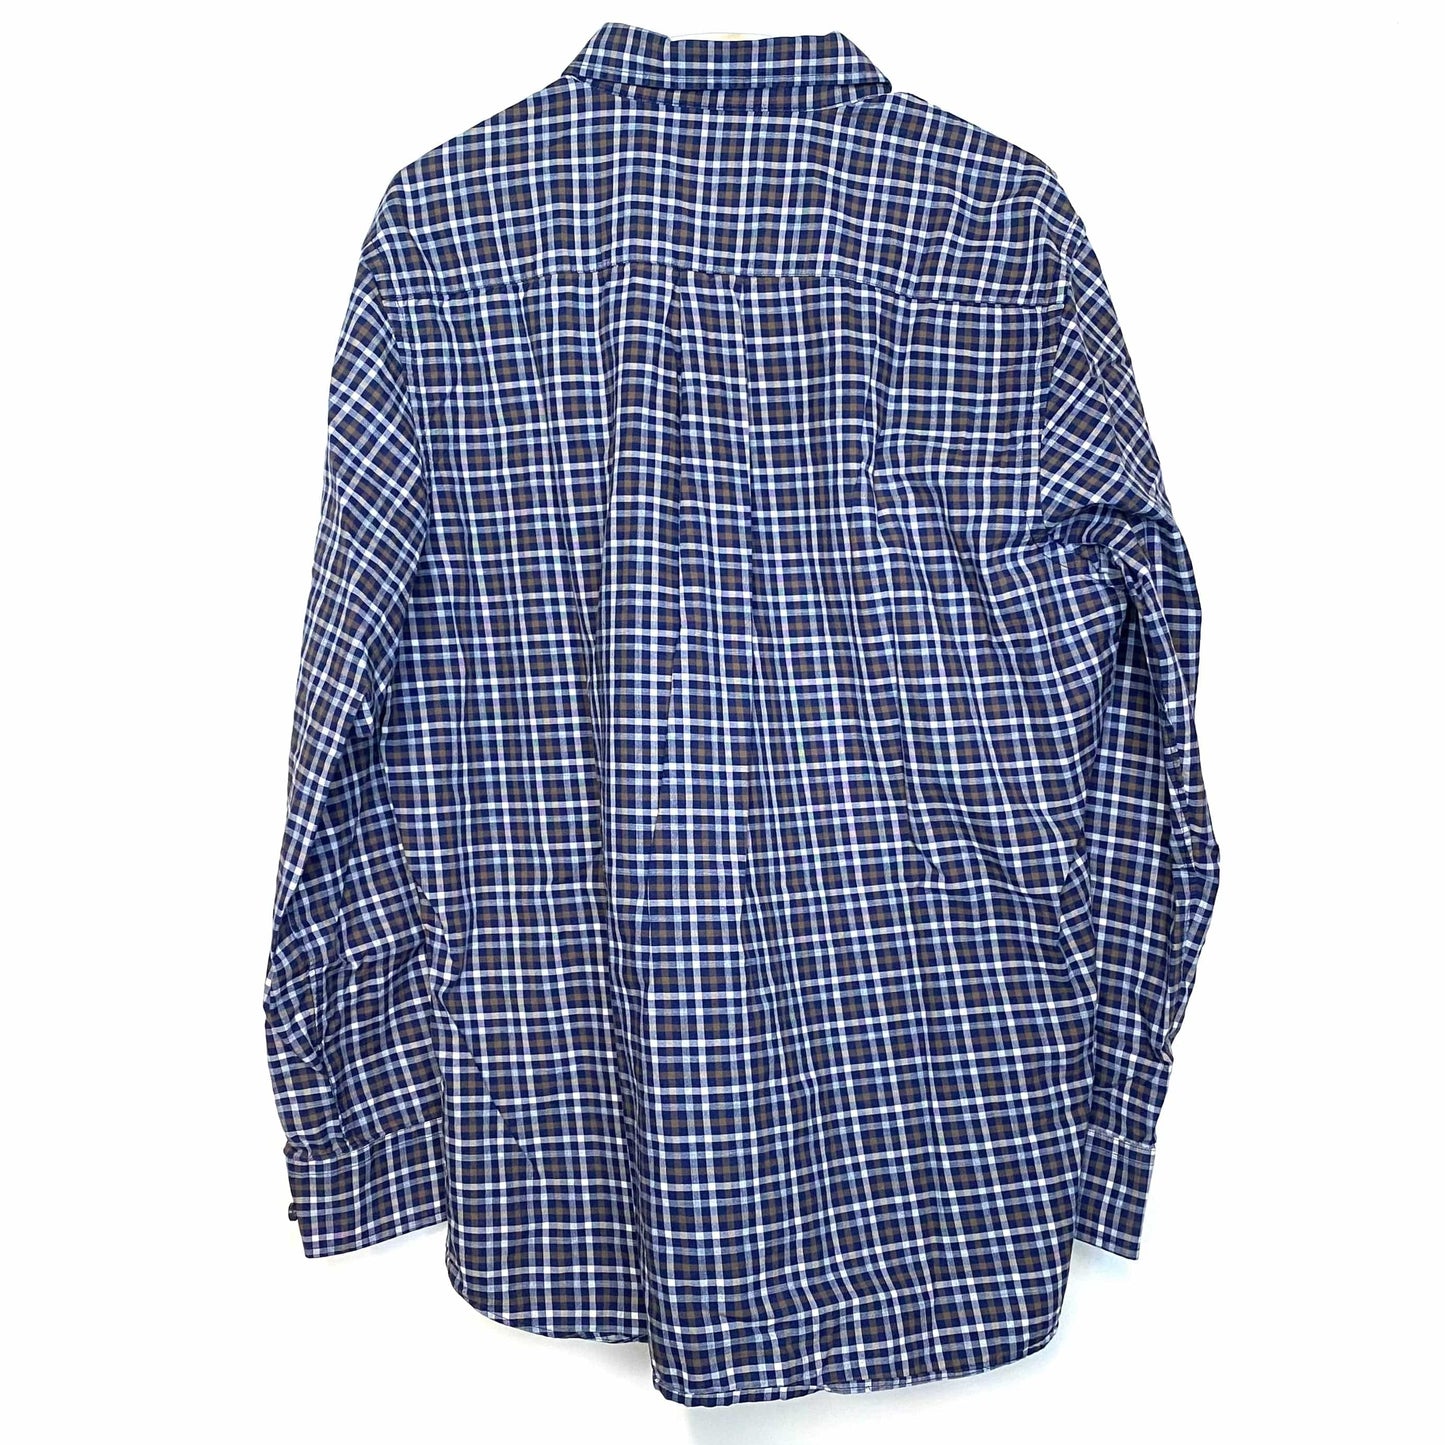 Scott Barber Mens Dress Shirt Size L Brown Blue White Plaid Button-Up L/s